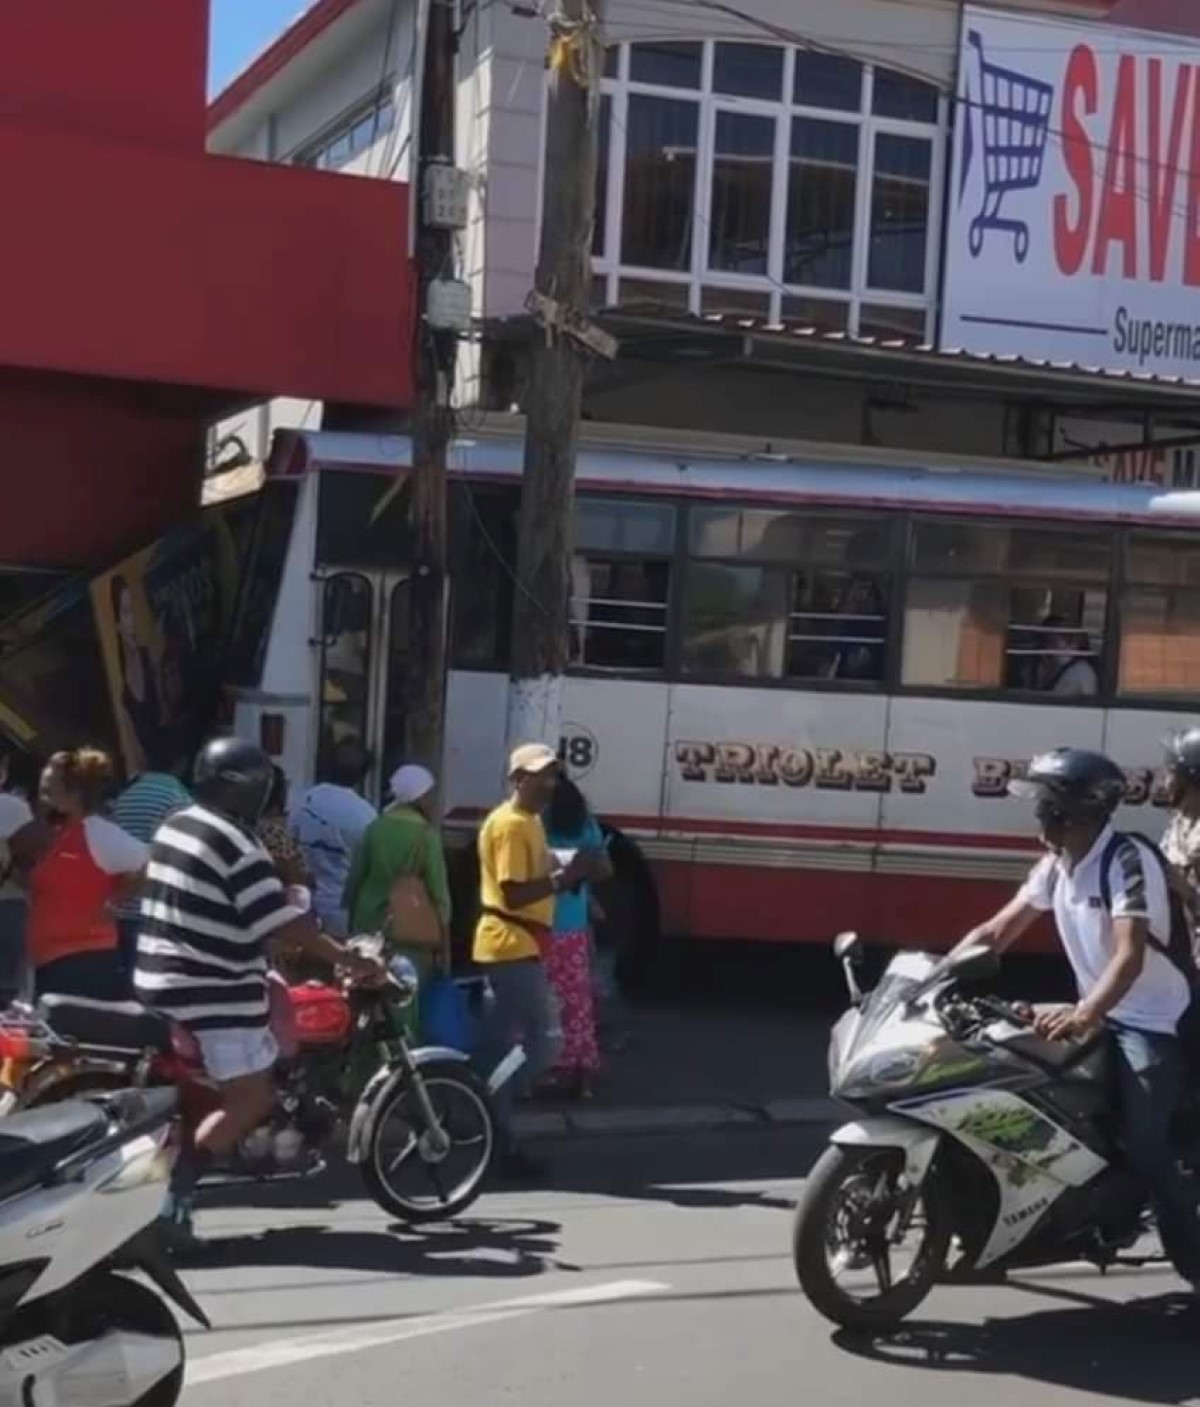 Triolet : un autobus s'encastre dans un magasin 